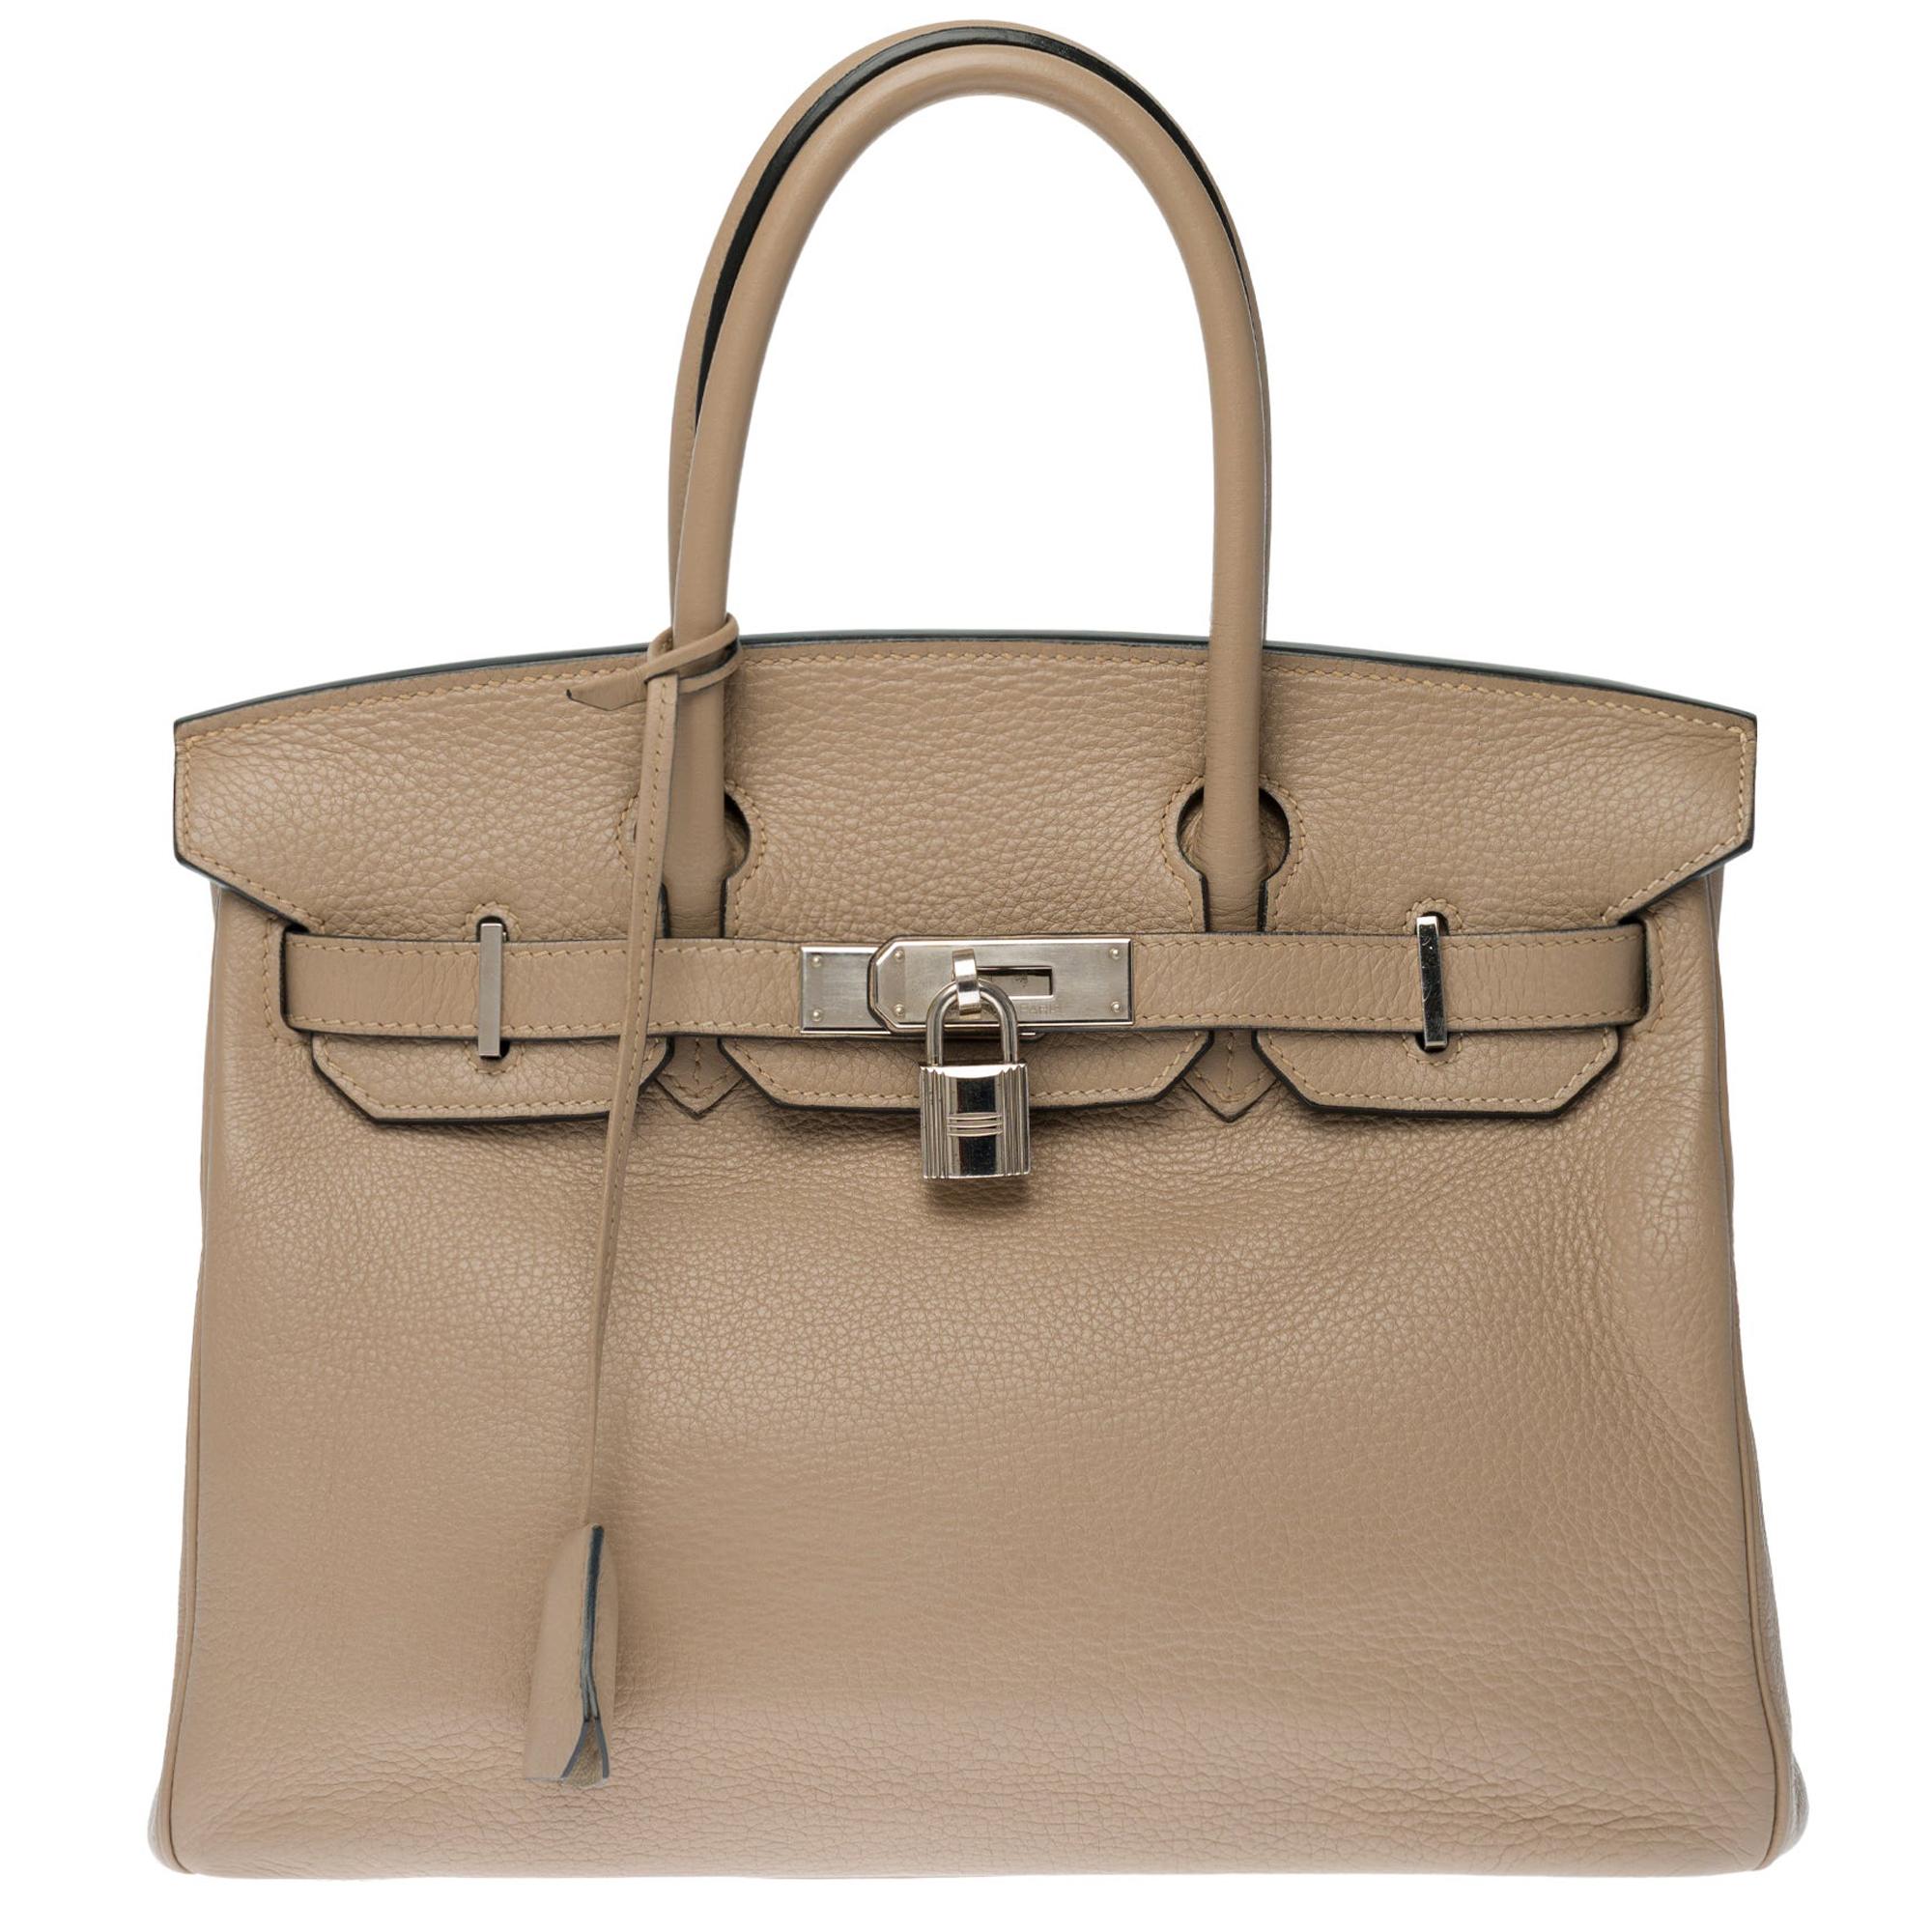 Hermès Birkin 30 handbag in Trench Togo leather, silver Palladium hardware